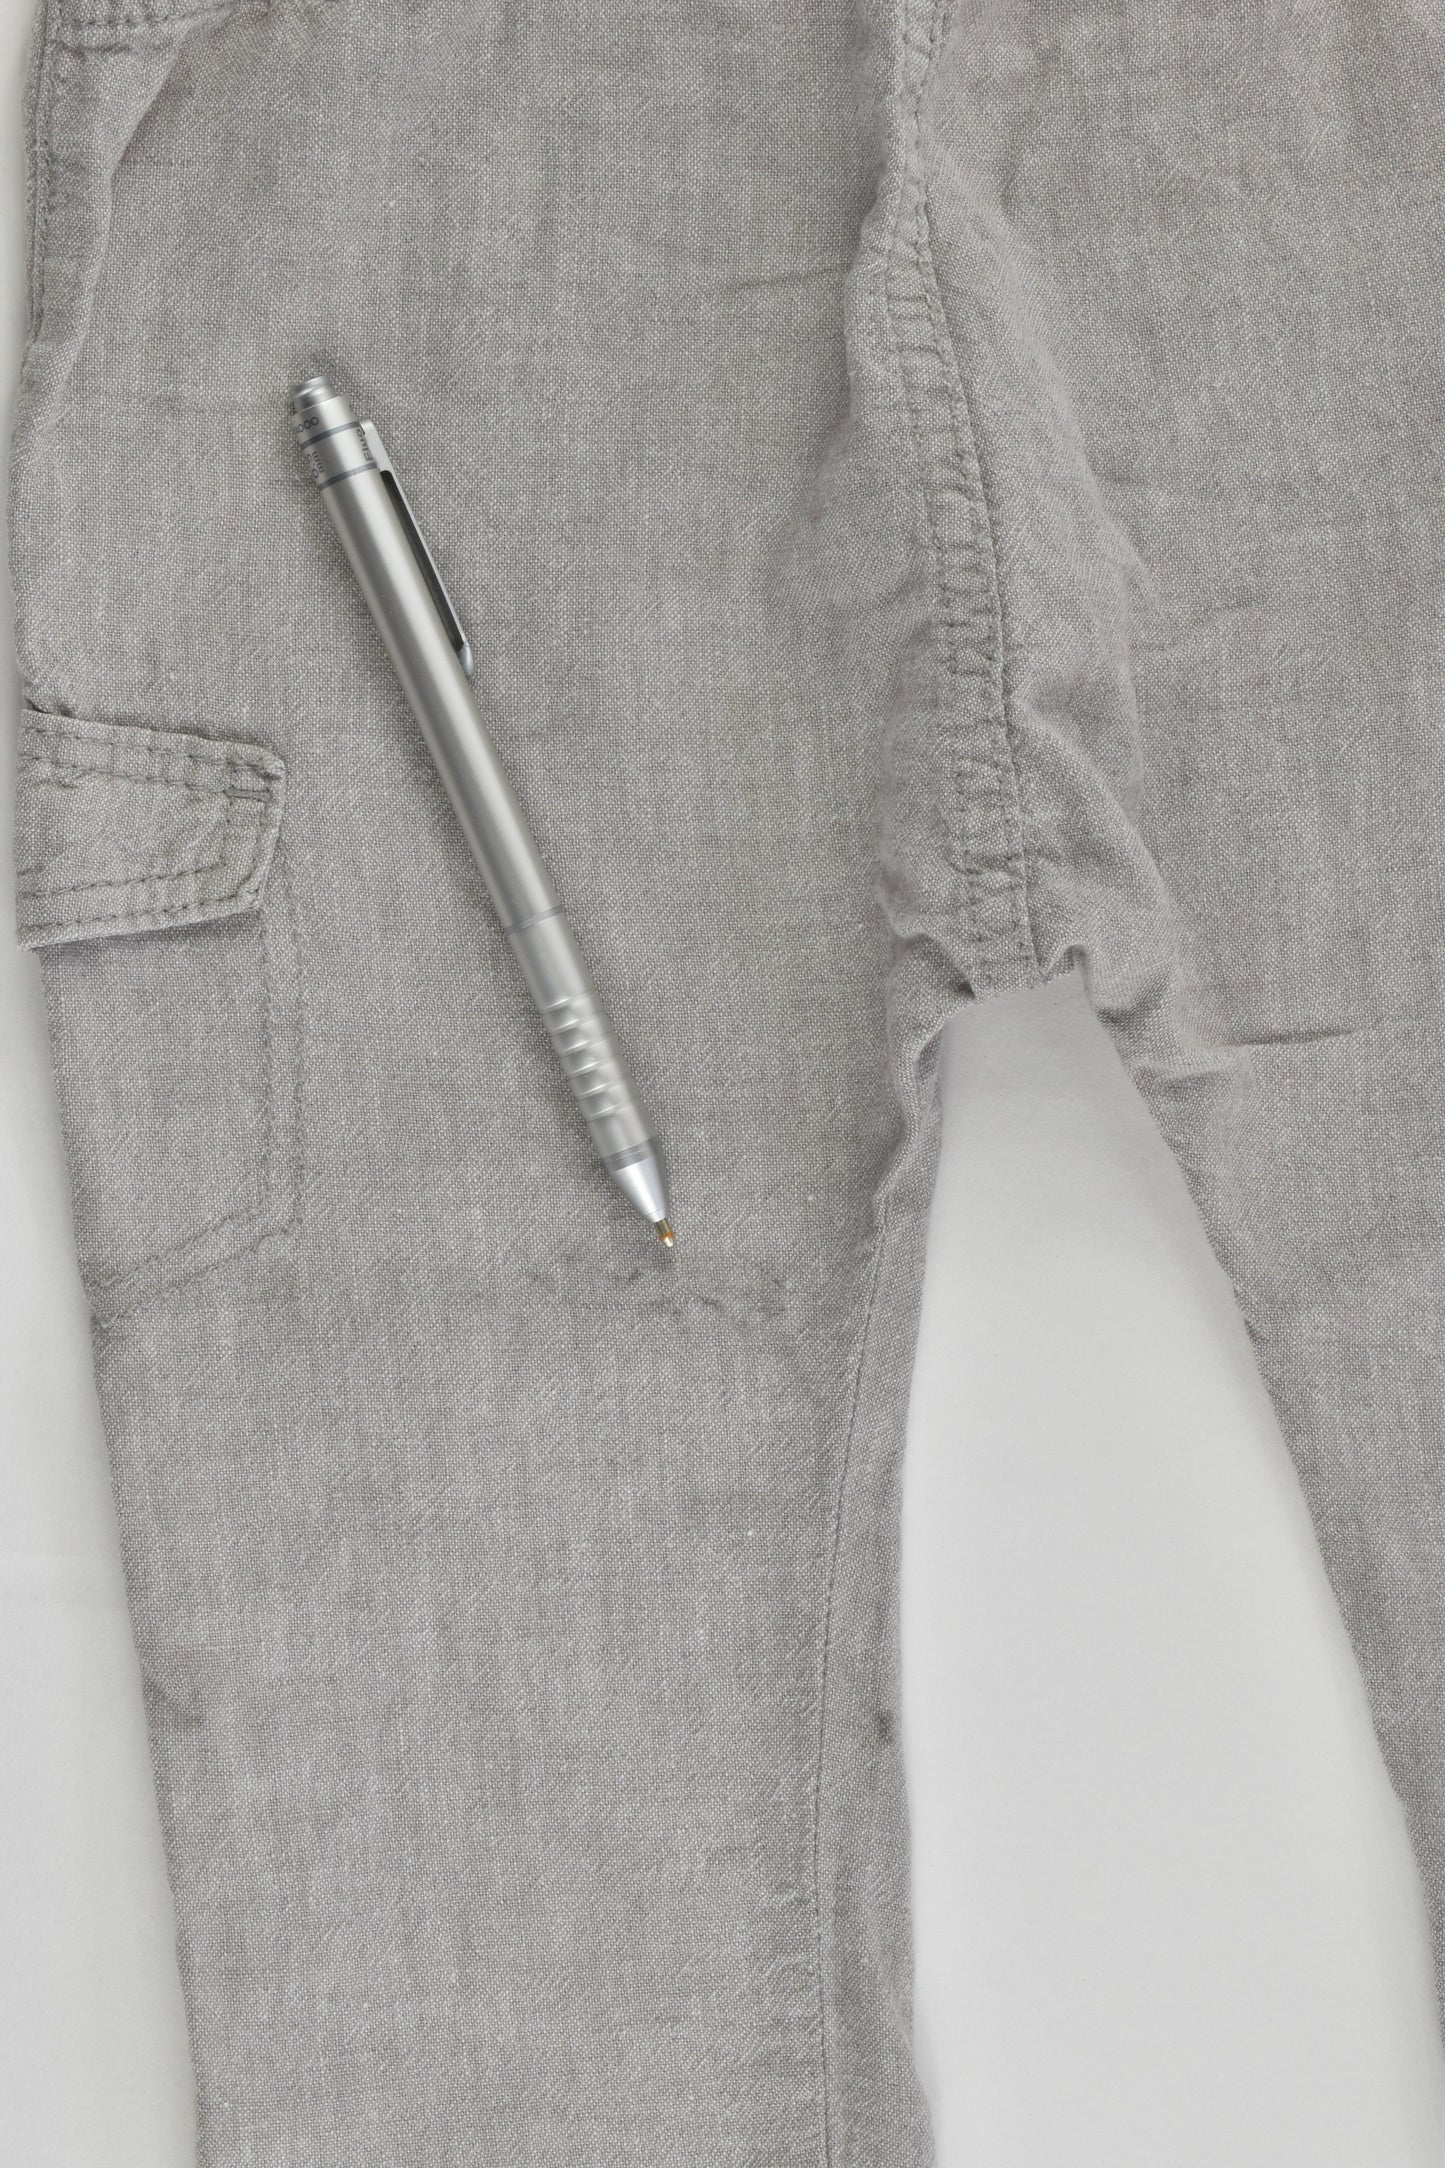 H&M Size 0-1 (80 cm, 9-12 months) Linen/Cotton Pants